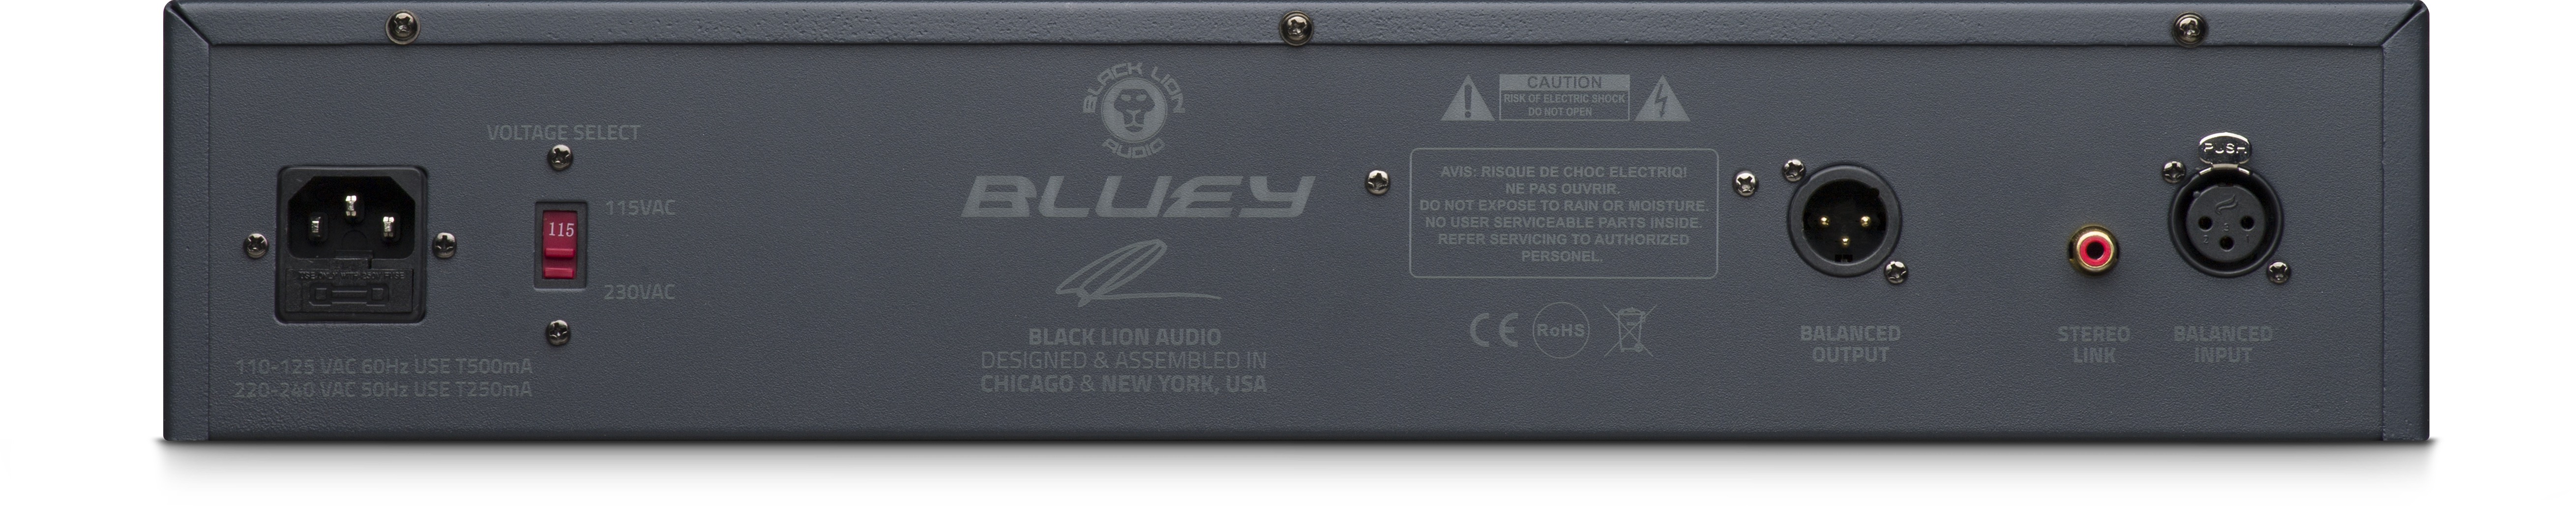 Black Lion Audio Bluey - Compressor / limiter / gate - Variation 1